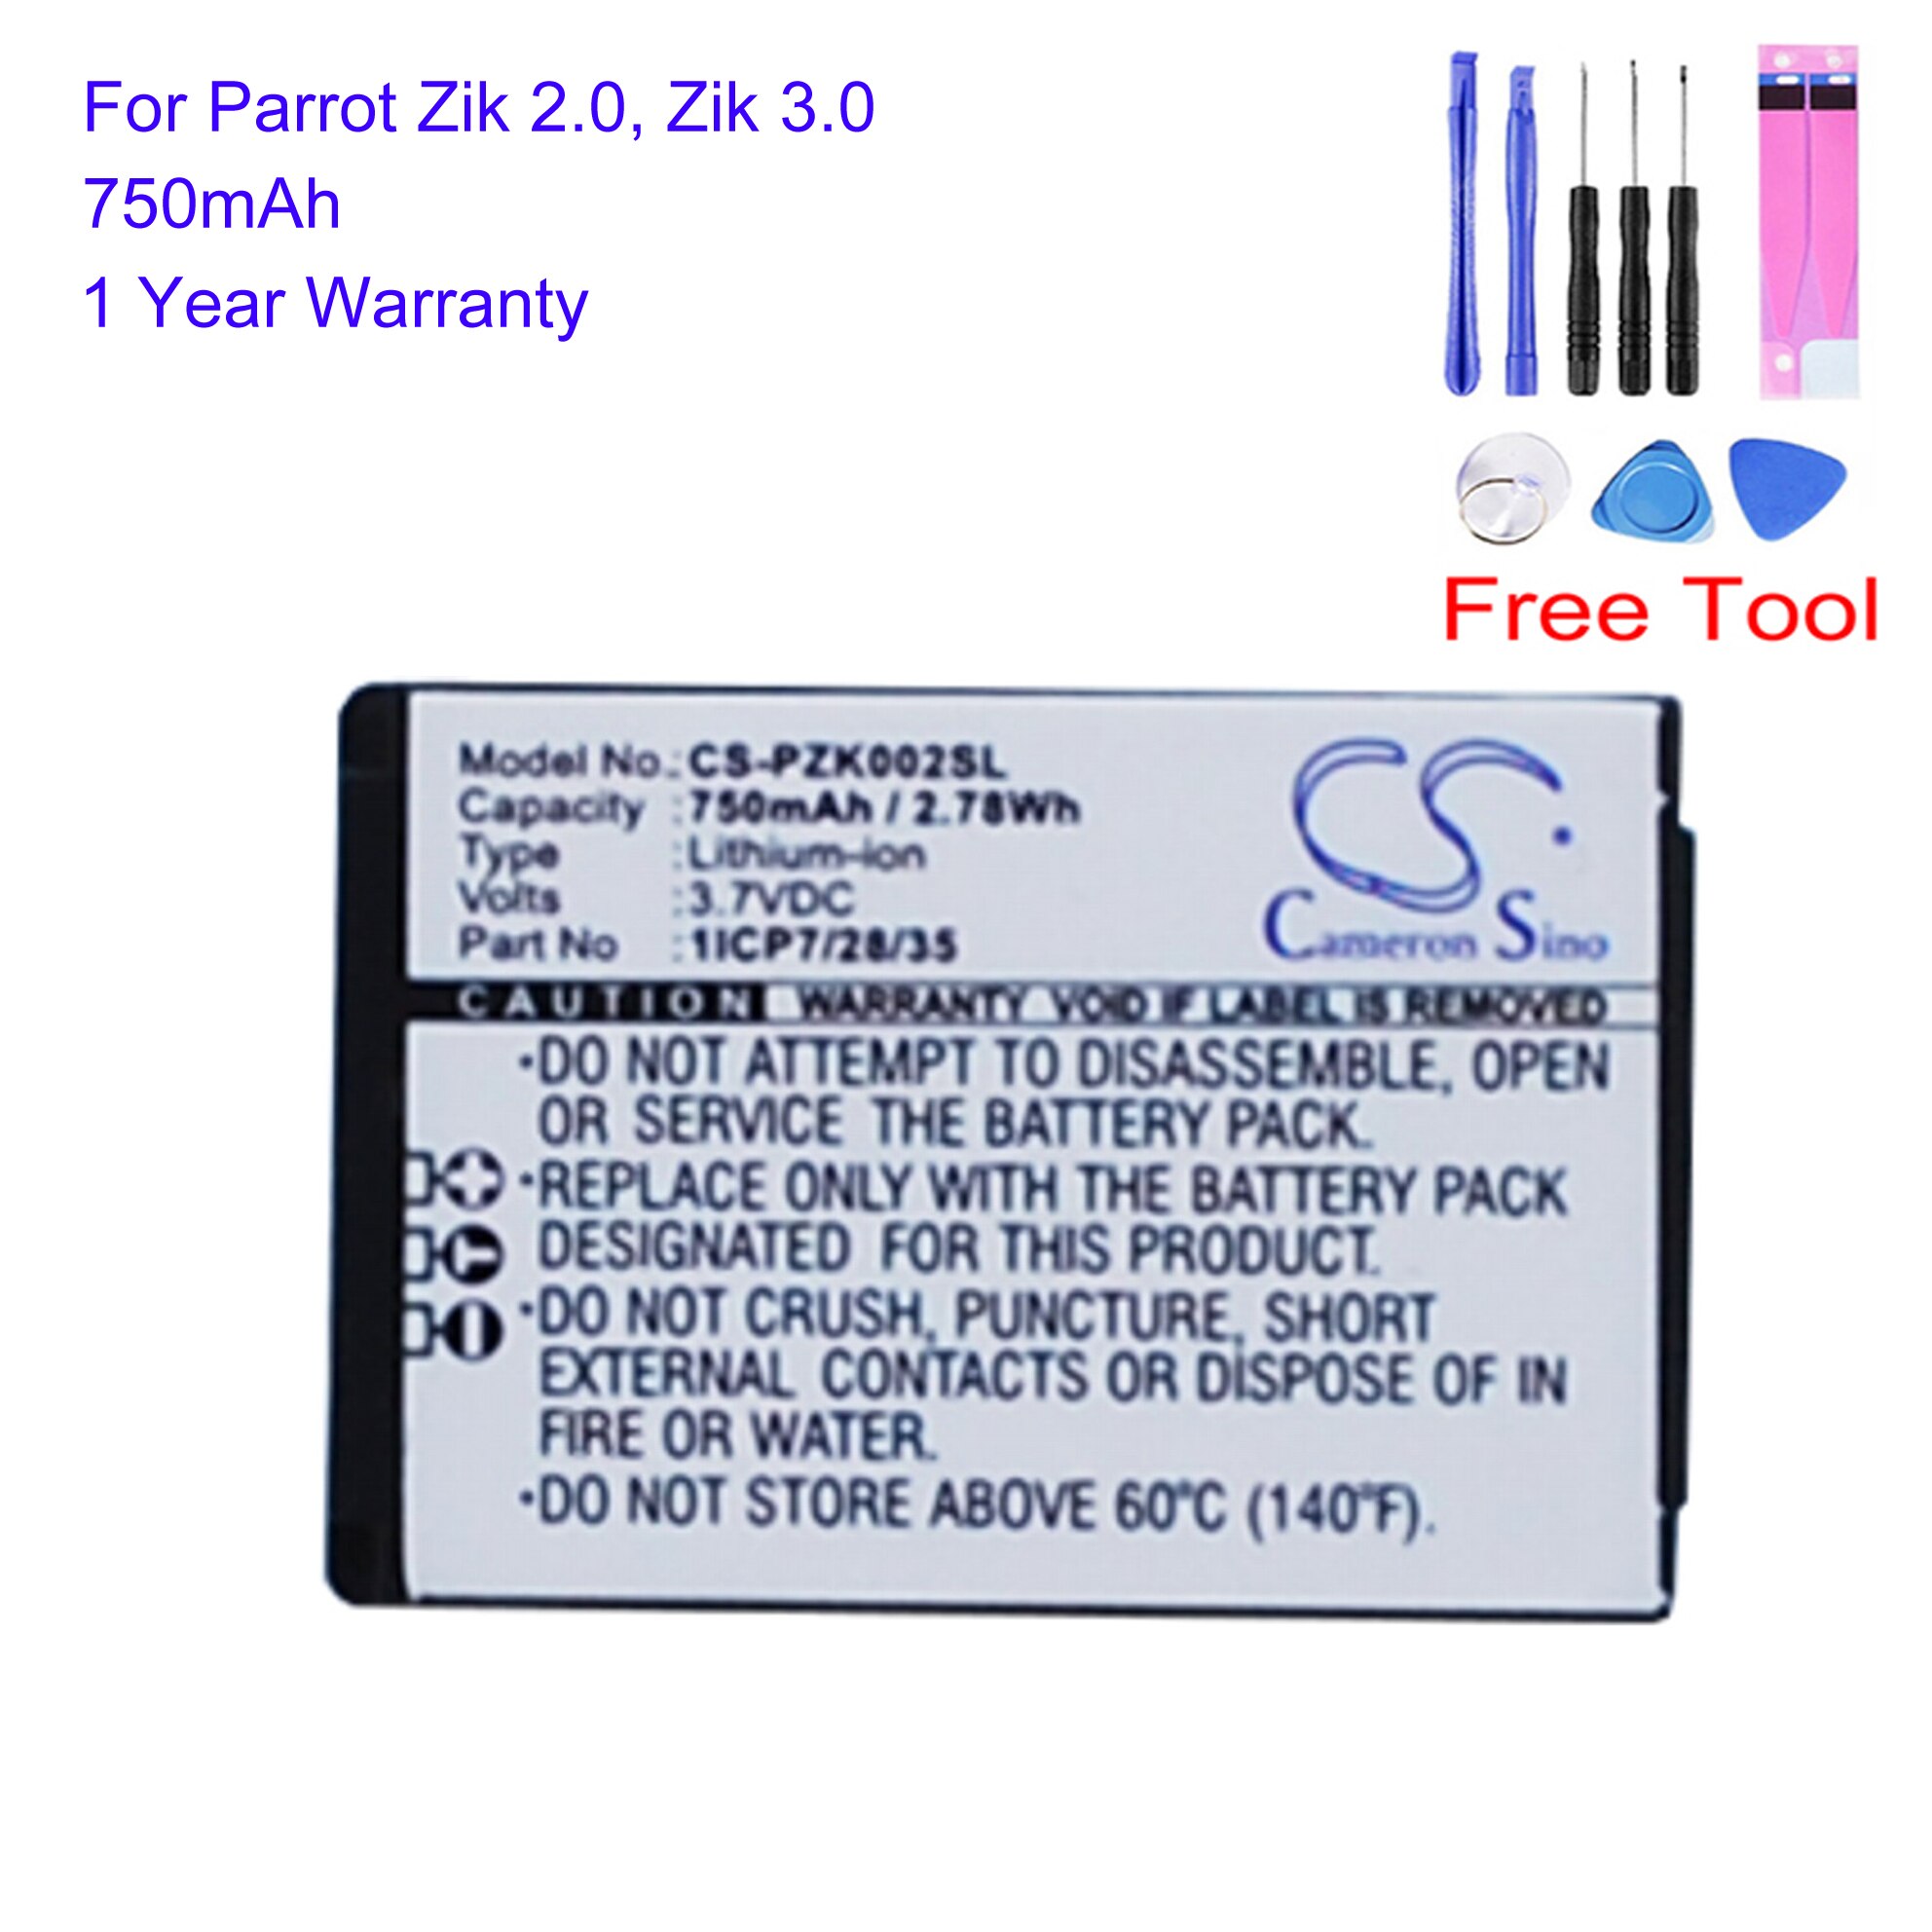 Cameron Sino-batería de repuesto inalámbrica para Parrot Zik 28/35 2,0 CS-PZK002SL, 1ICP7/3,0